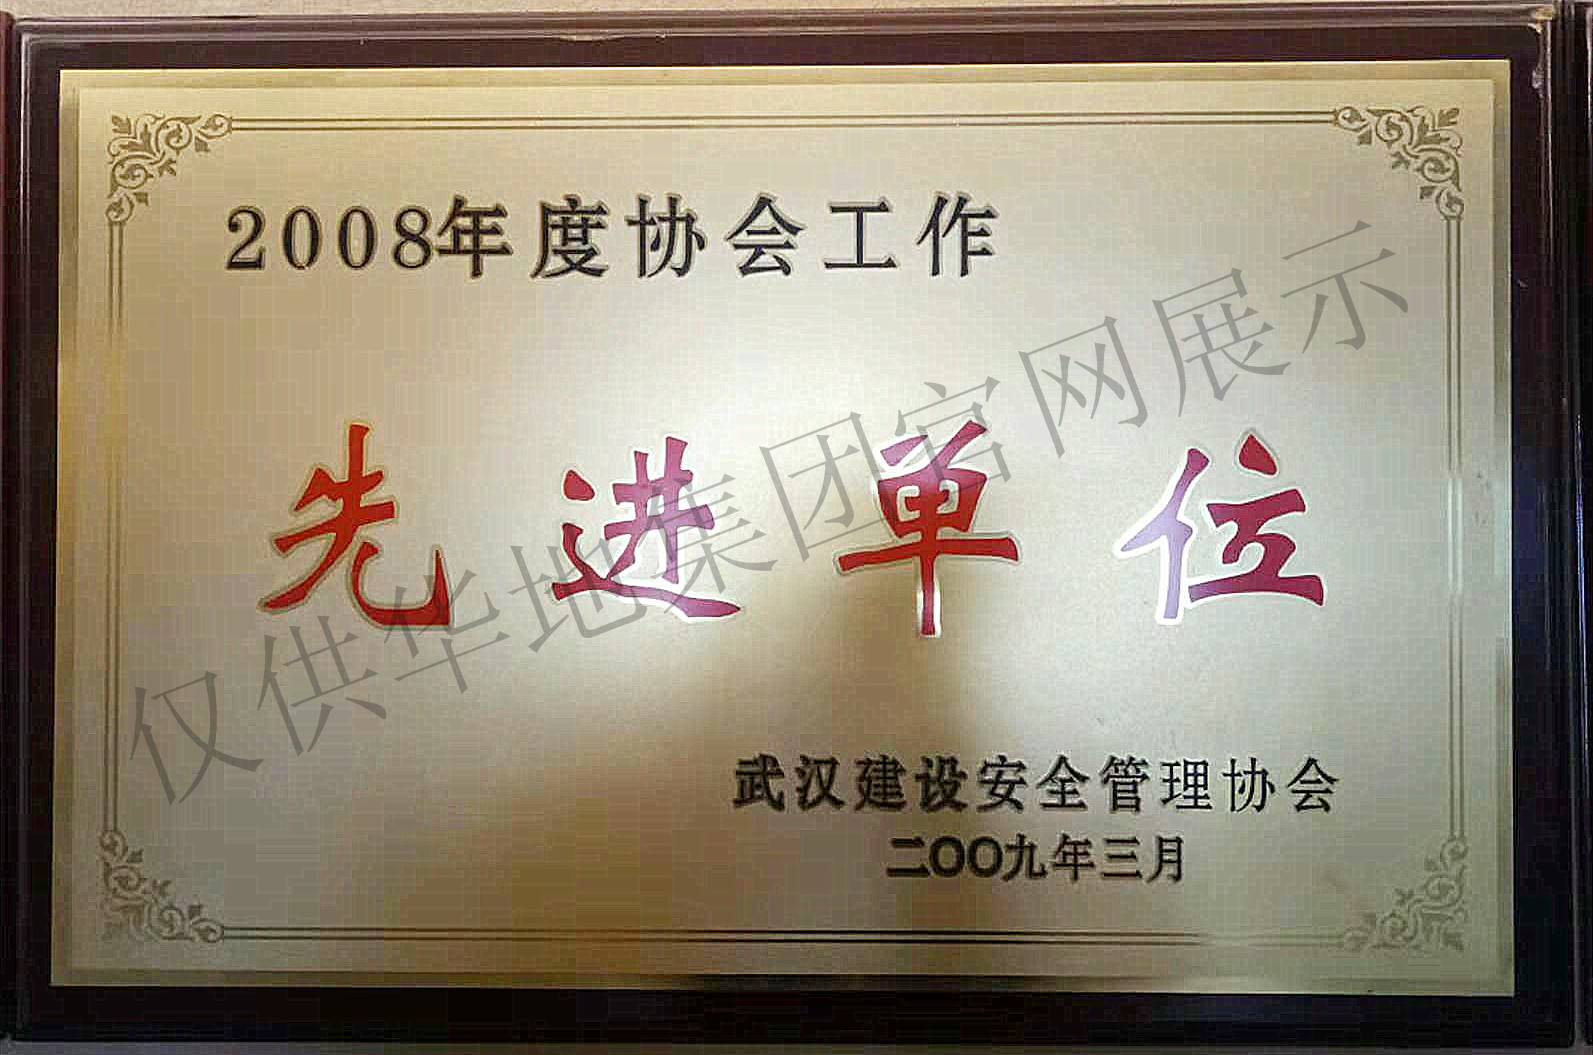  武漢建設安全管理協會2008年度協會工作“先進單位”